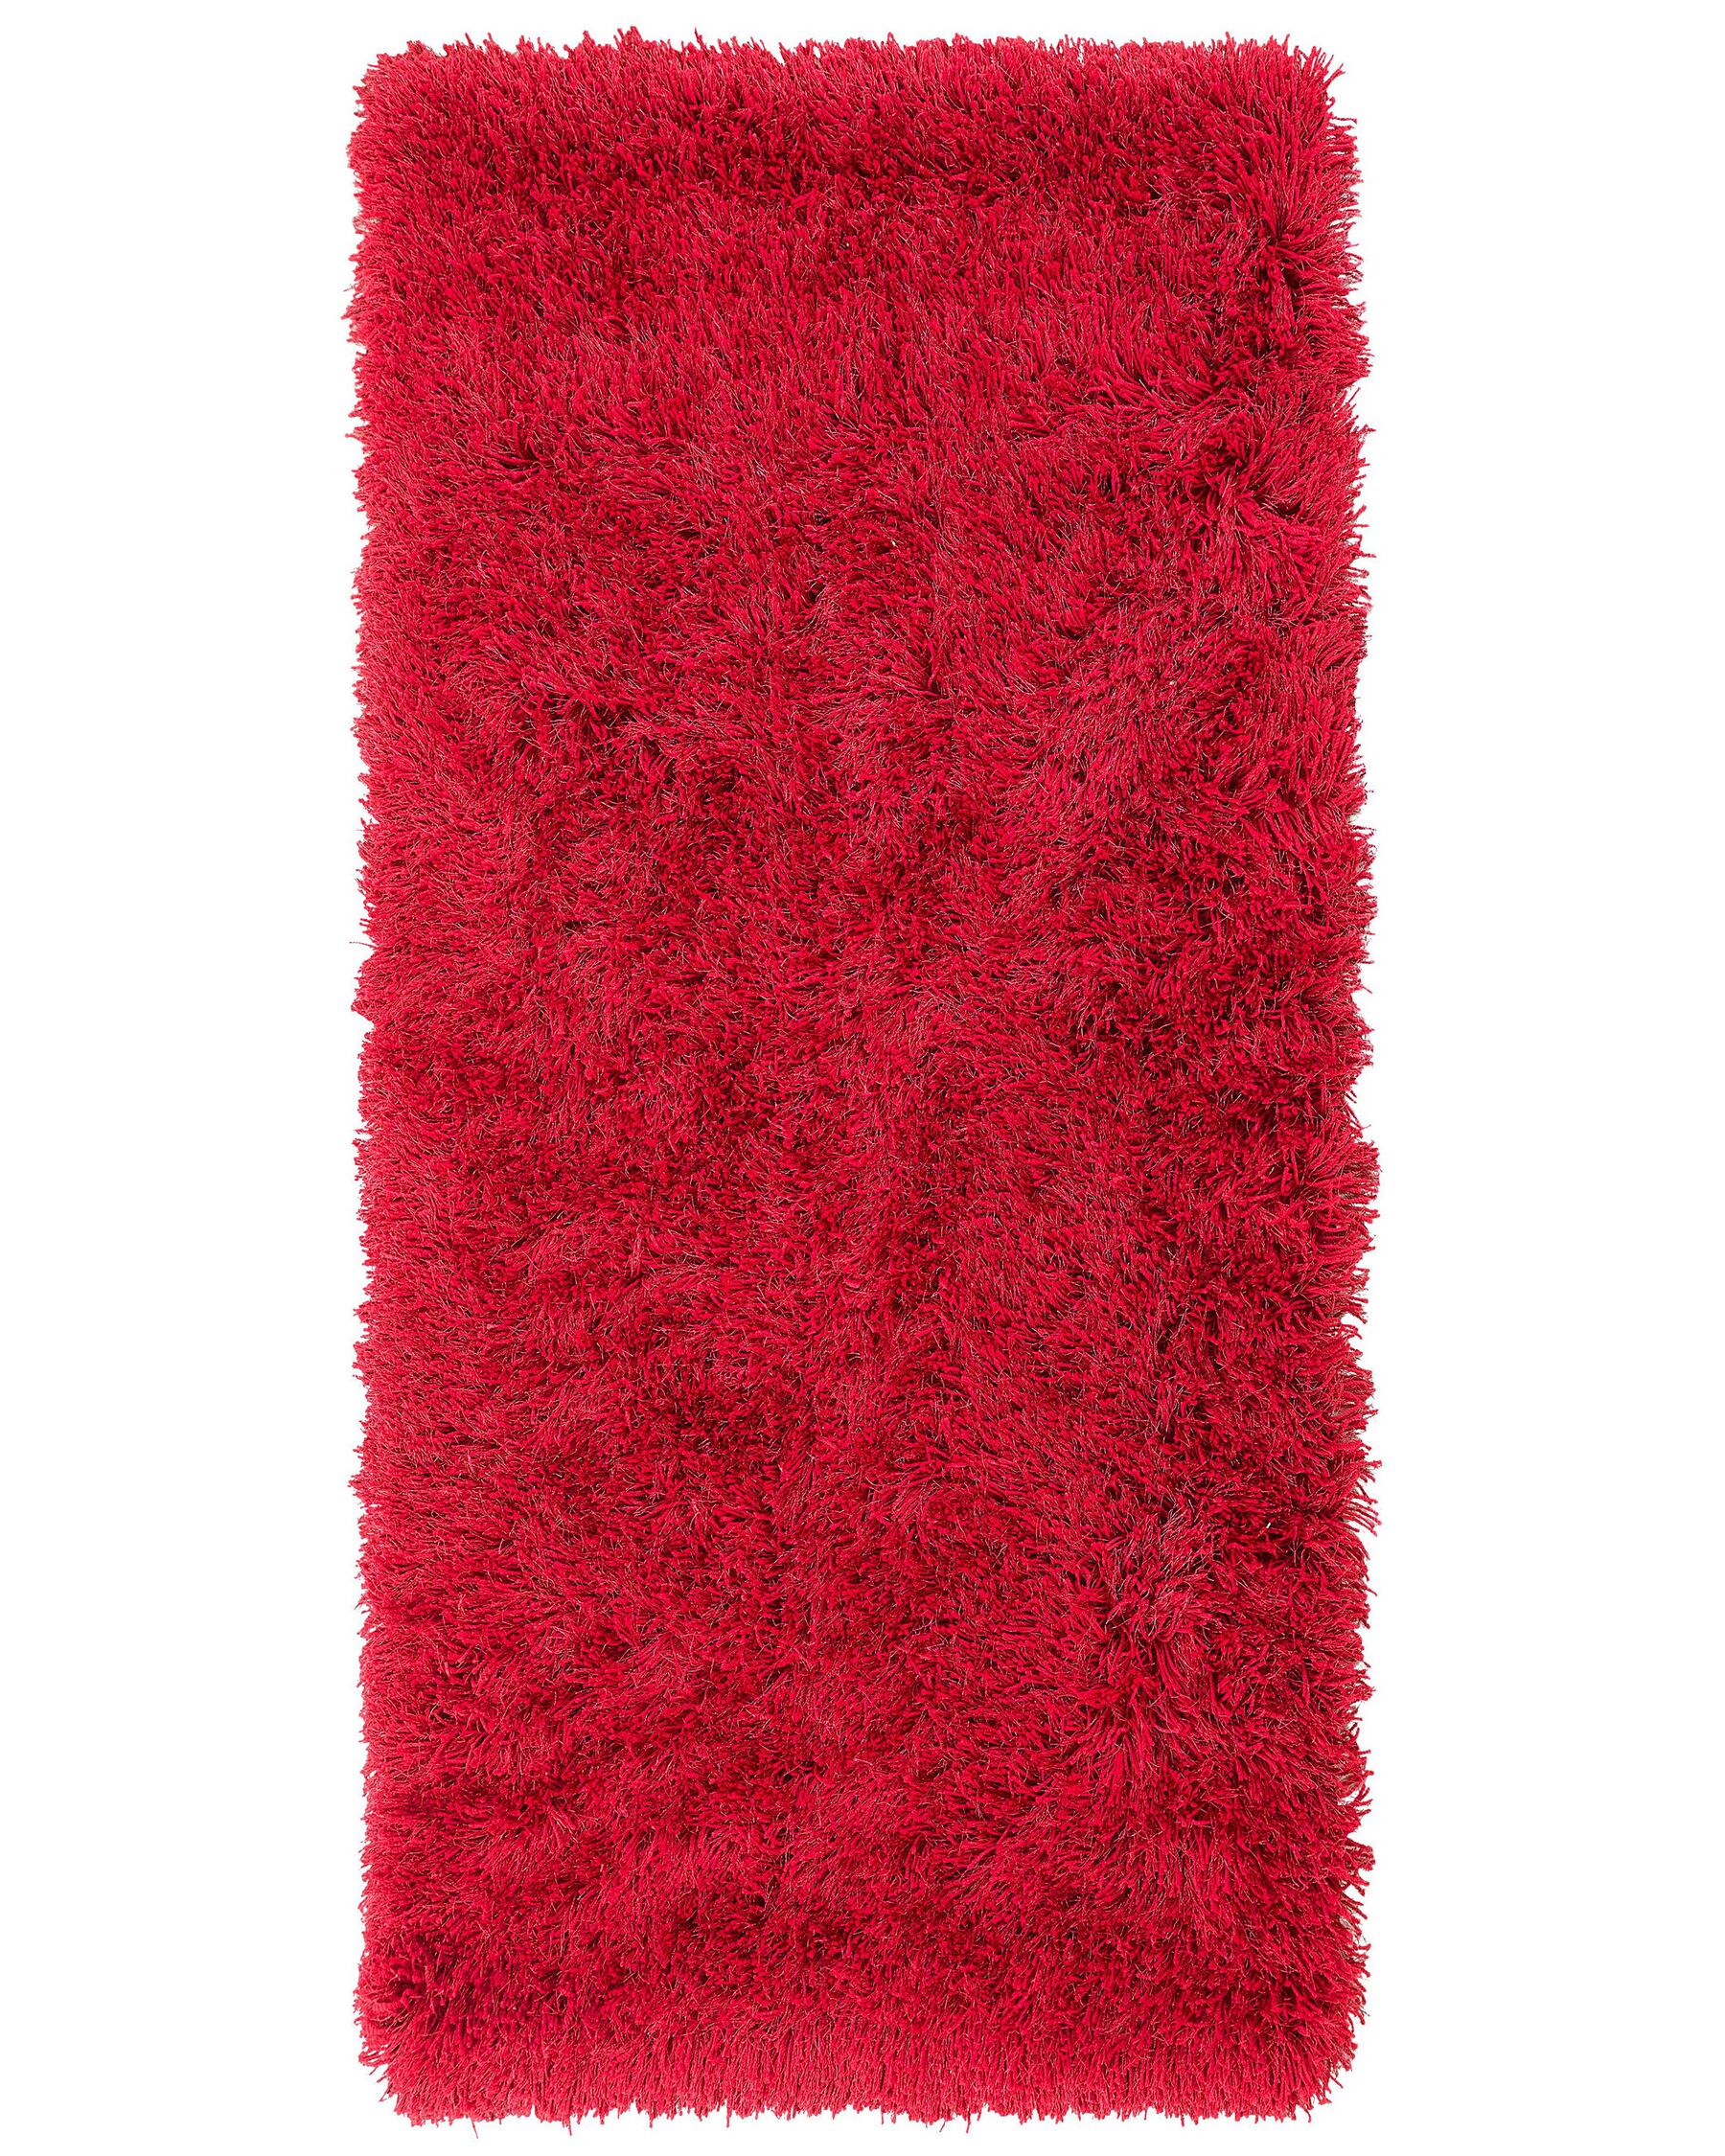 Tappeto shaggy rettangolare rosso 80 x 150 cm CIDE_746895